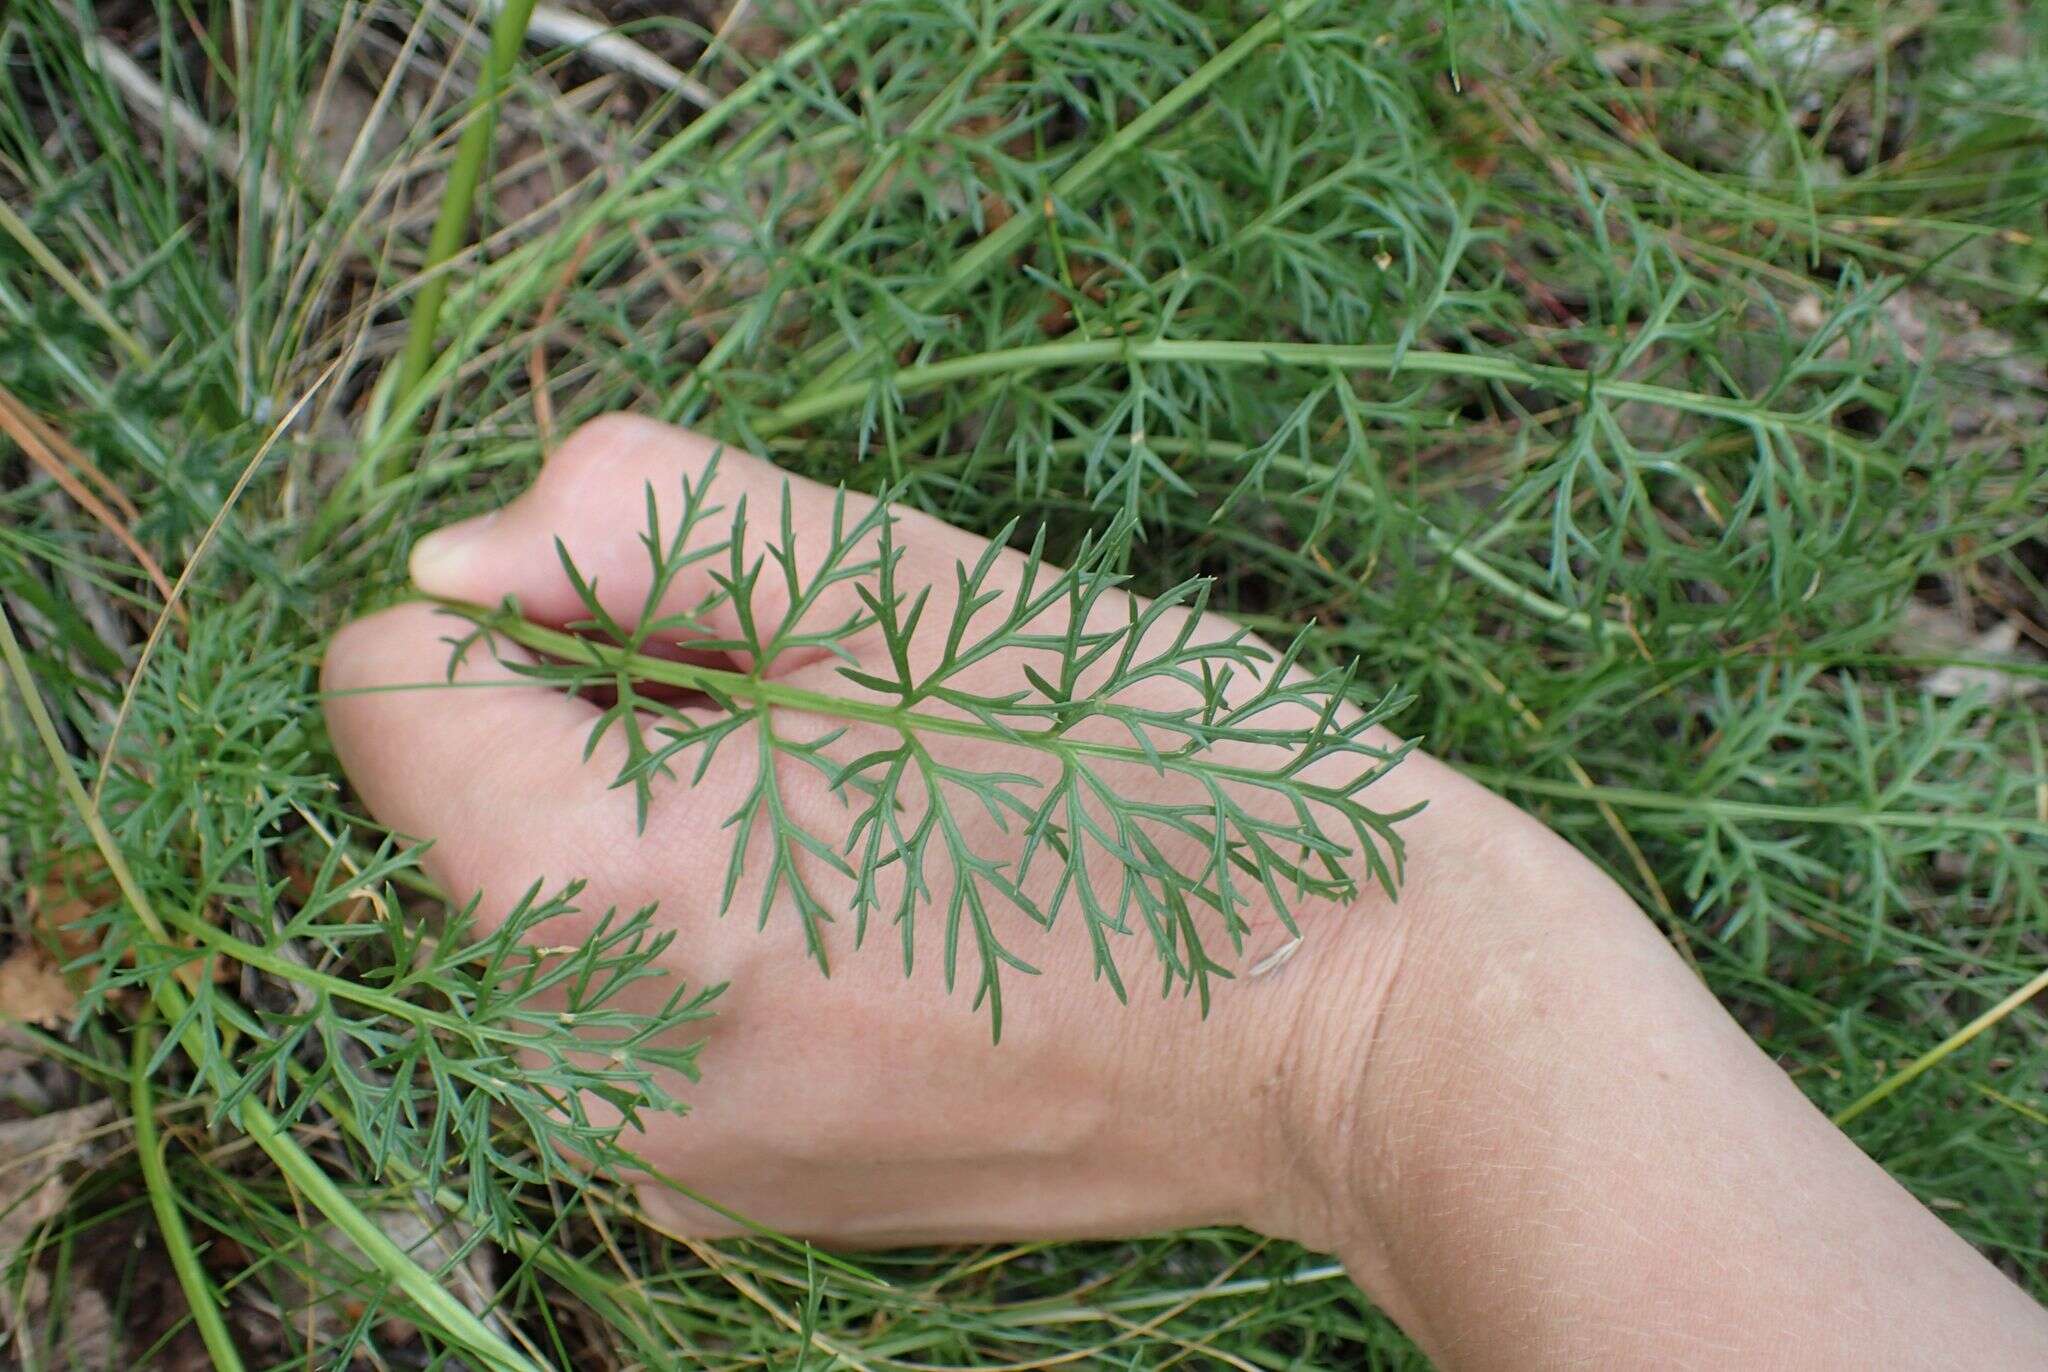 Image of Jacobaea adonidifolia (Loisel.) Pelser & Veldkamp